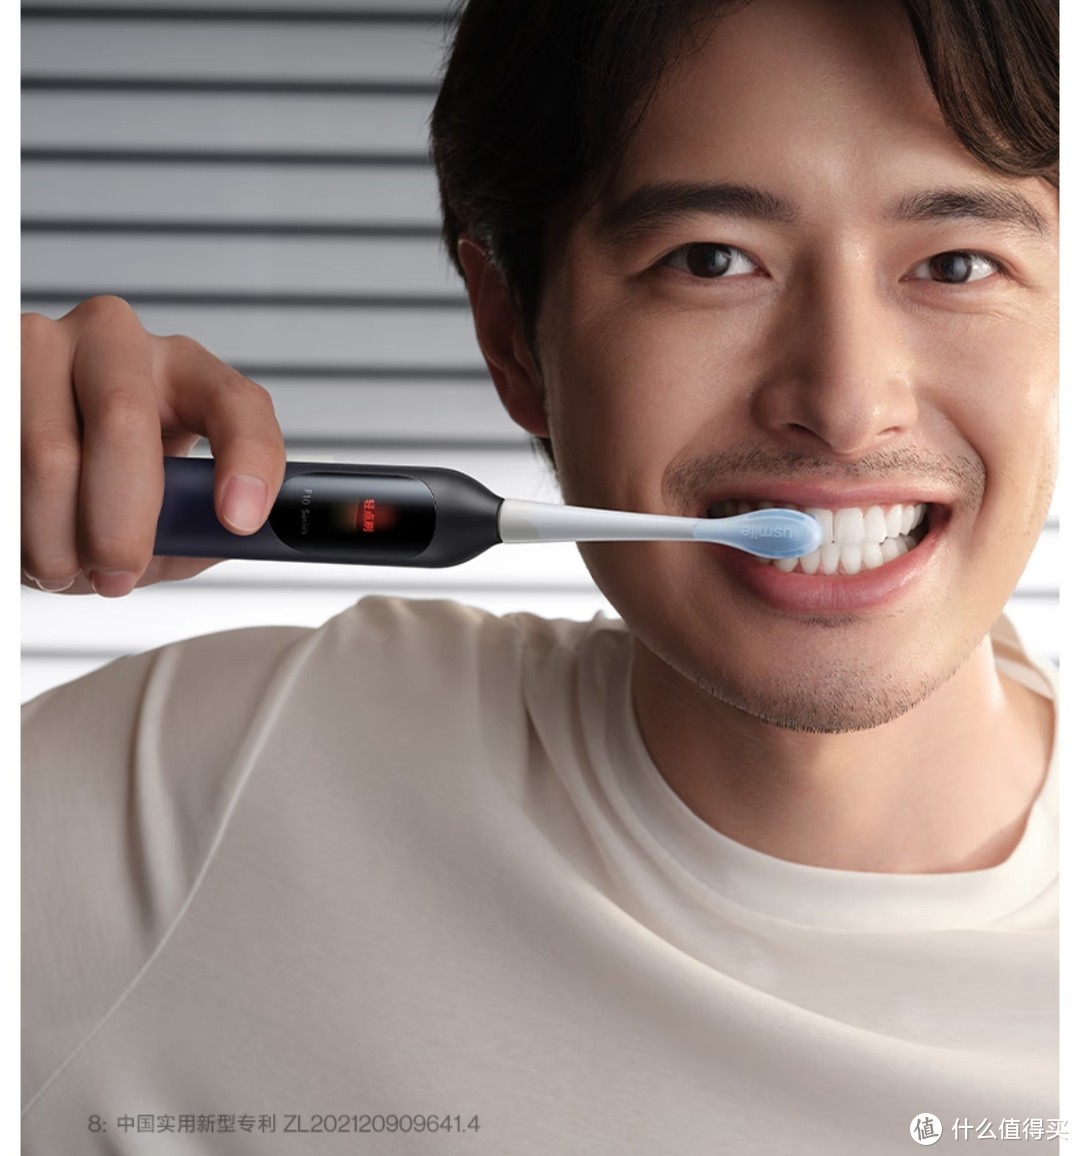 商家吐血促销，买牙刷送198员京东plus年卡，这个促销是不是很给力。需要牙刷的同学可以入手。